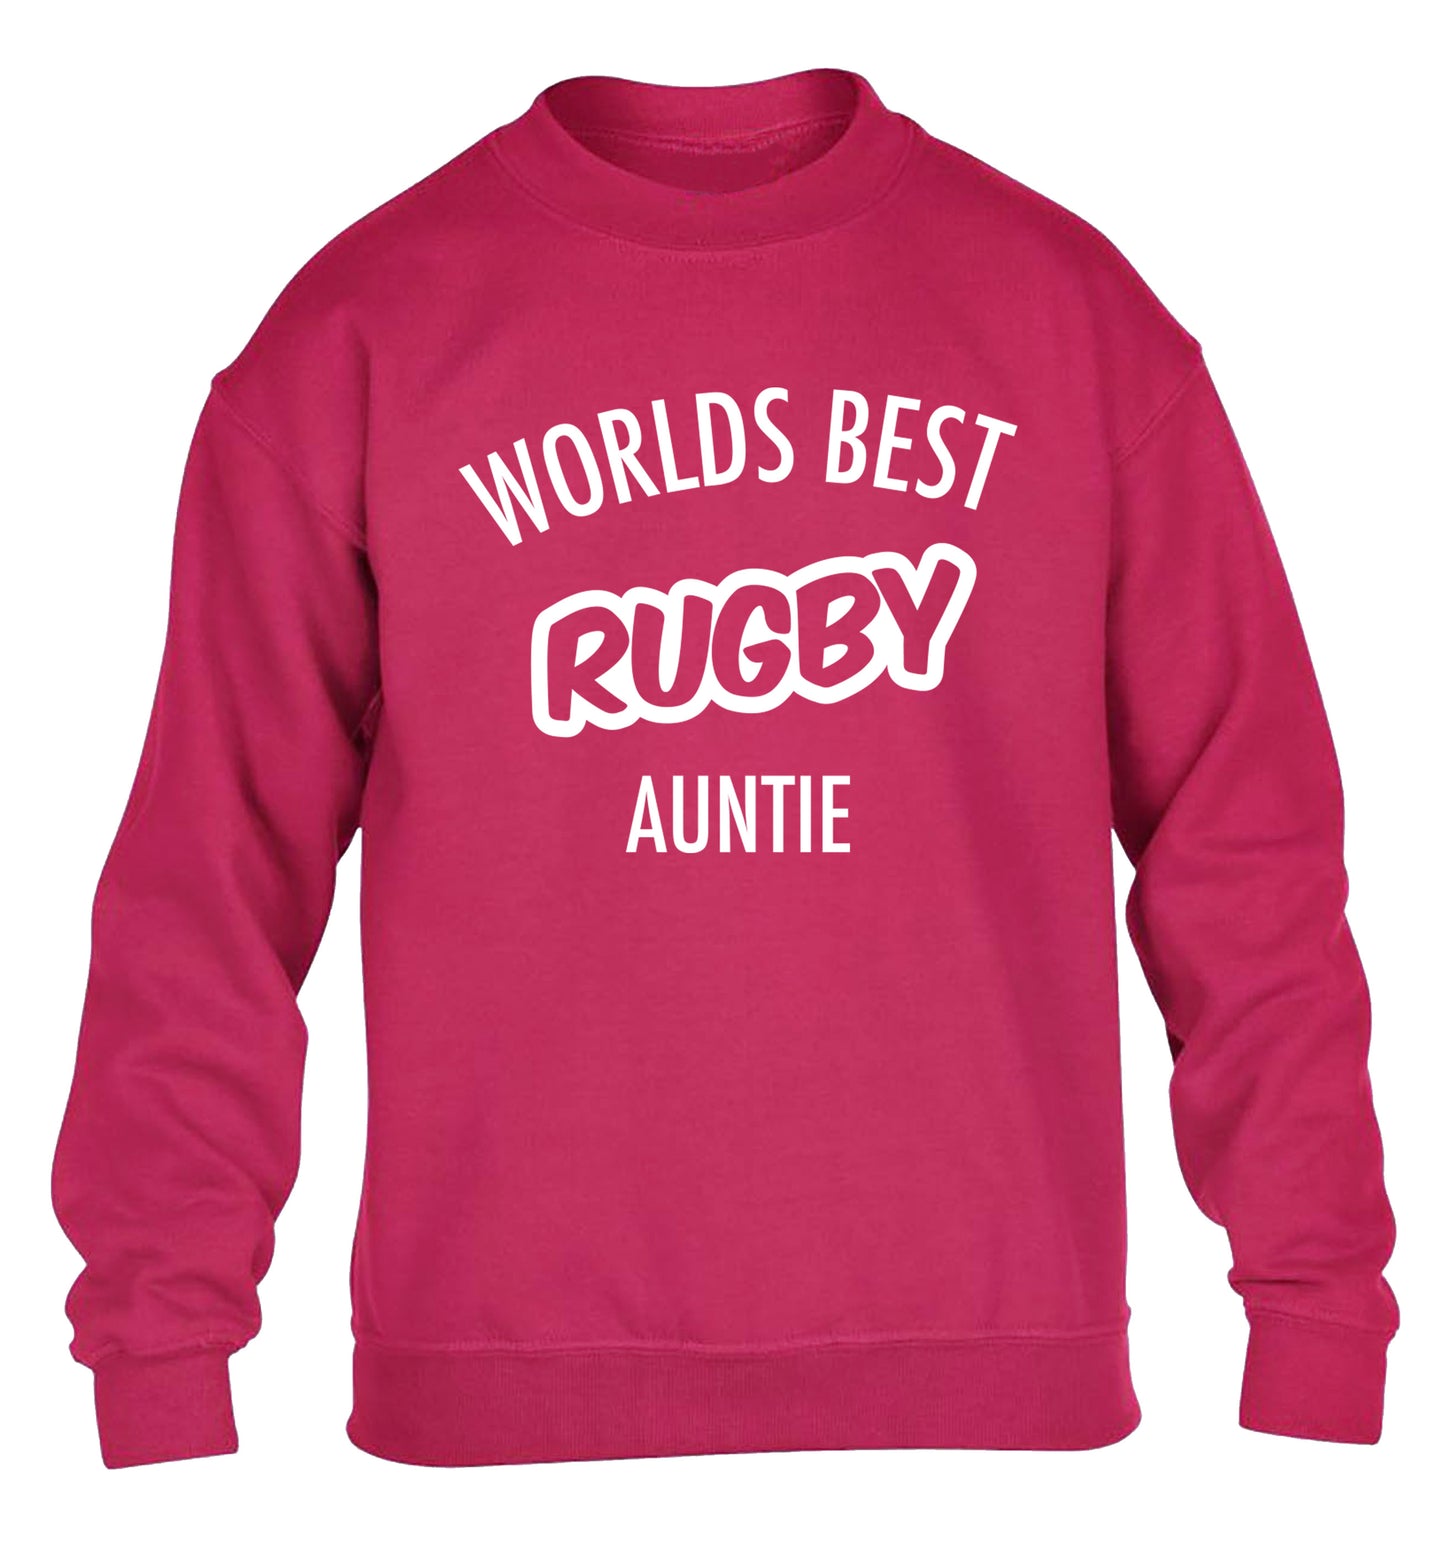 Worlds best rugby auntie children's pink sweater 12-13 Years